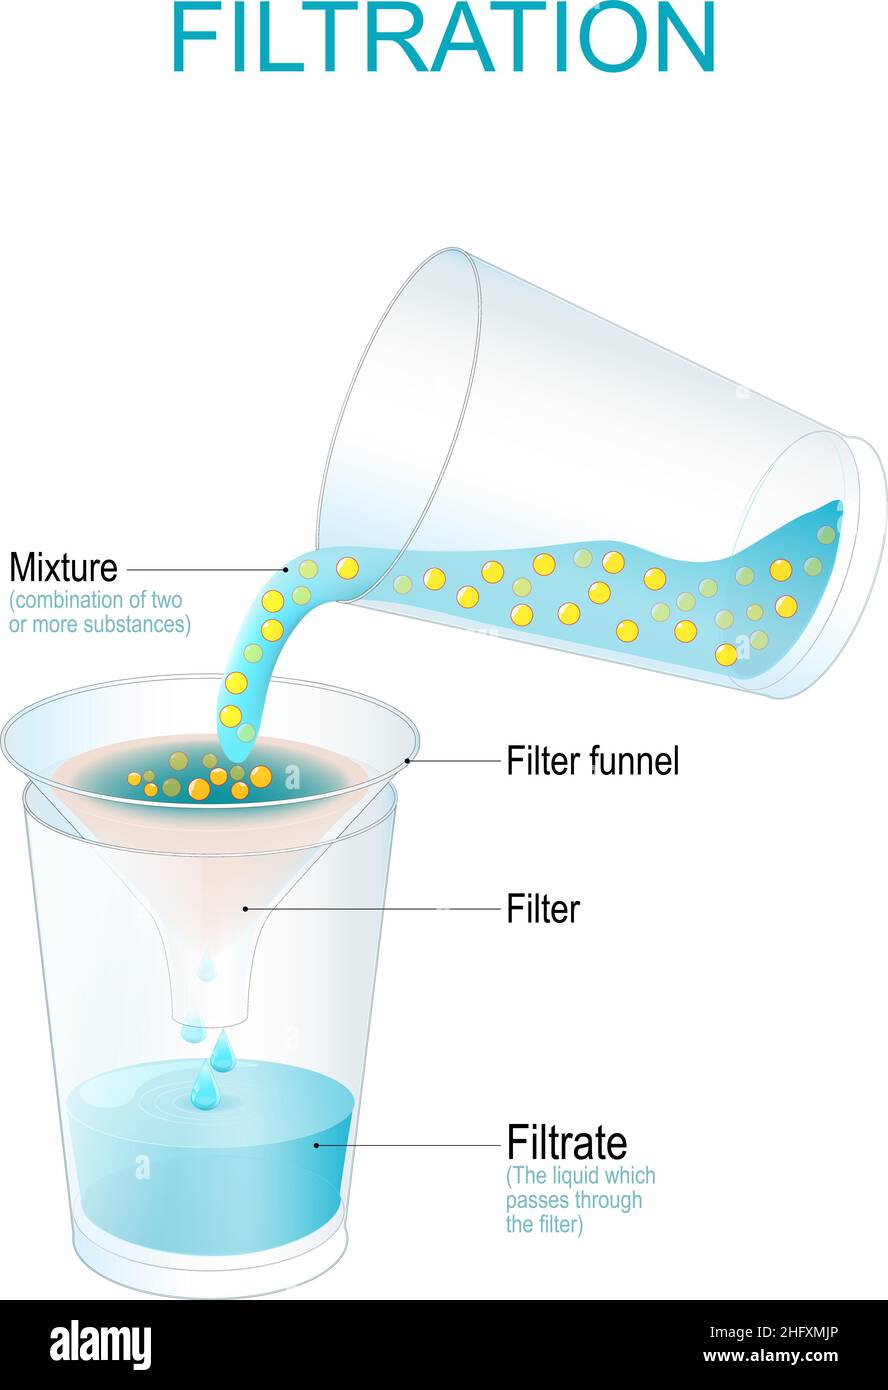 Filtrazione. Esperimento fisico. Processo di separazione che separa materia solida e fluido da una miscela utilizzando un filtro. Illustrazione vettoriale Illustrazione Vettoriale